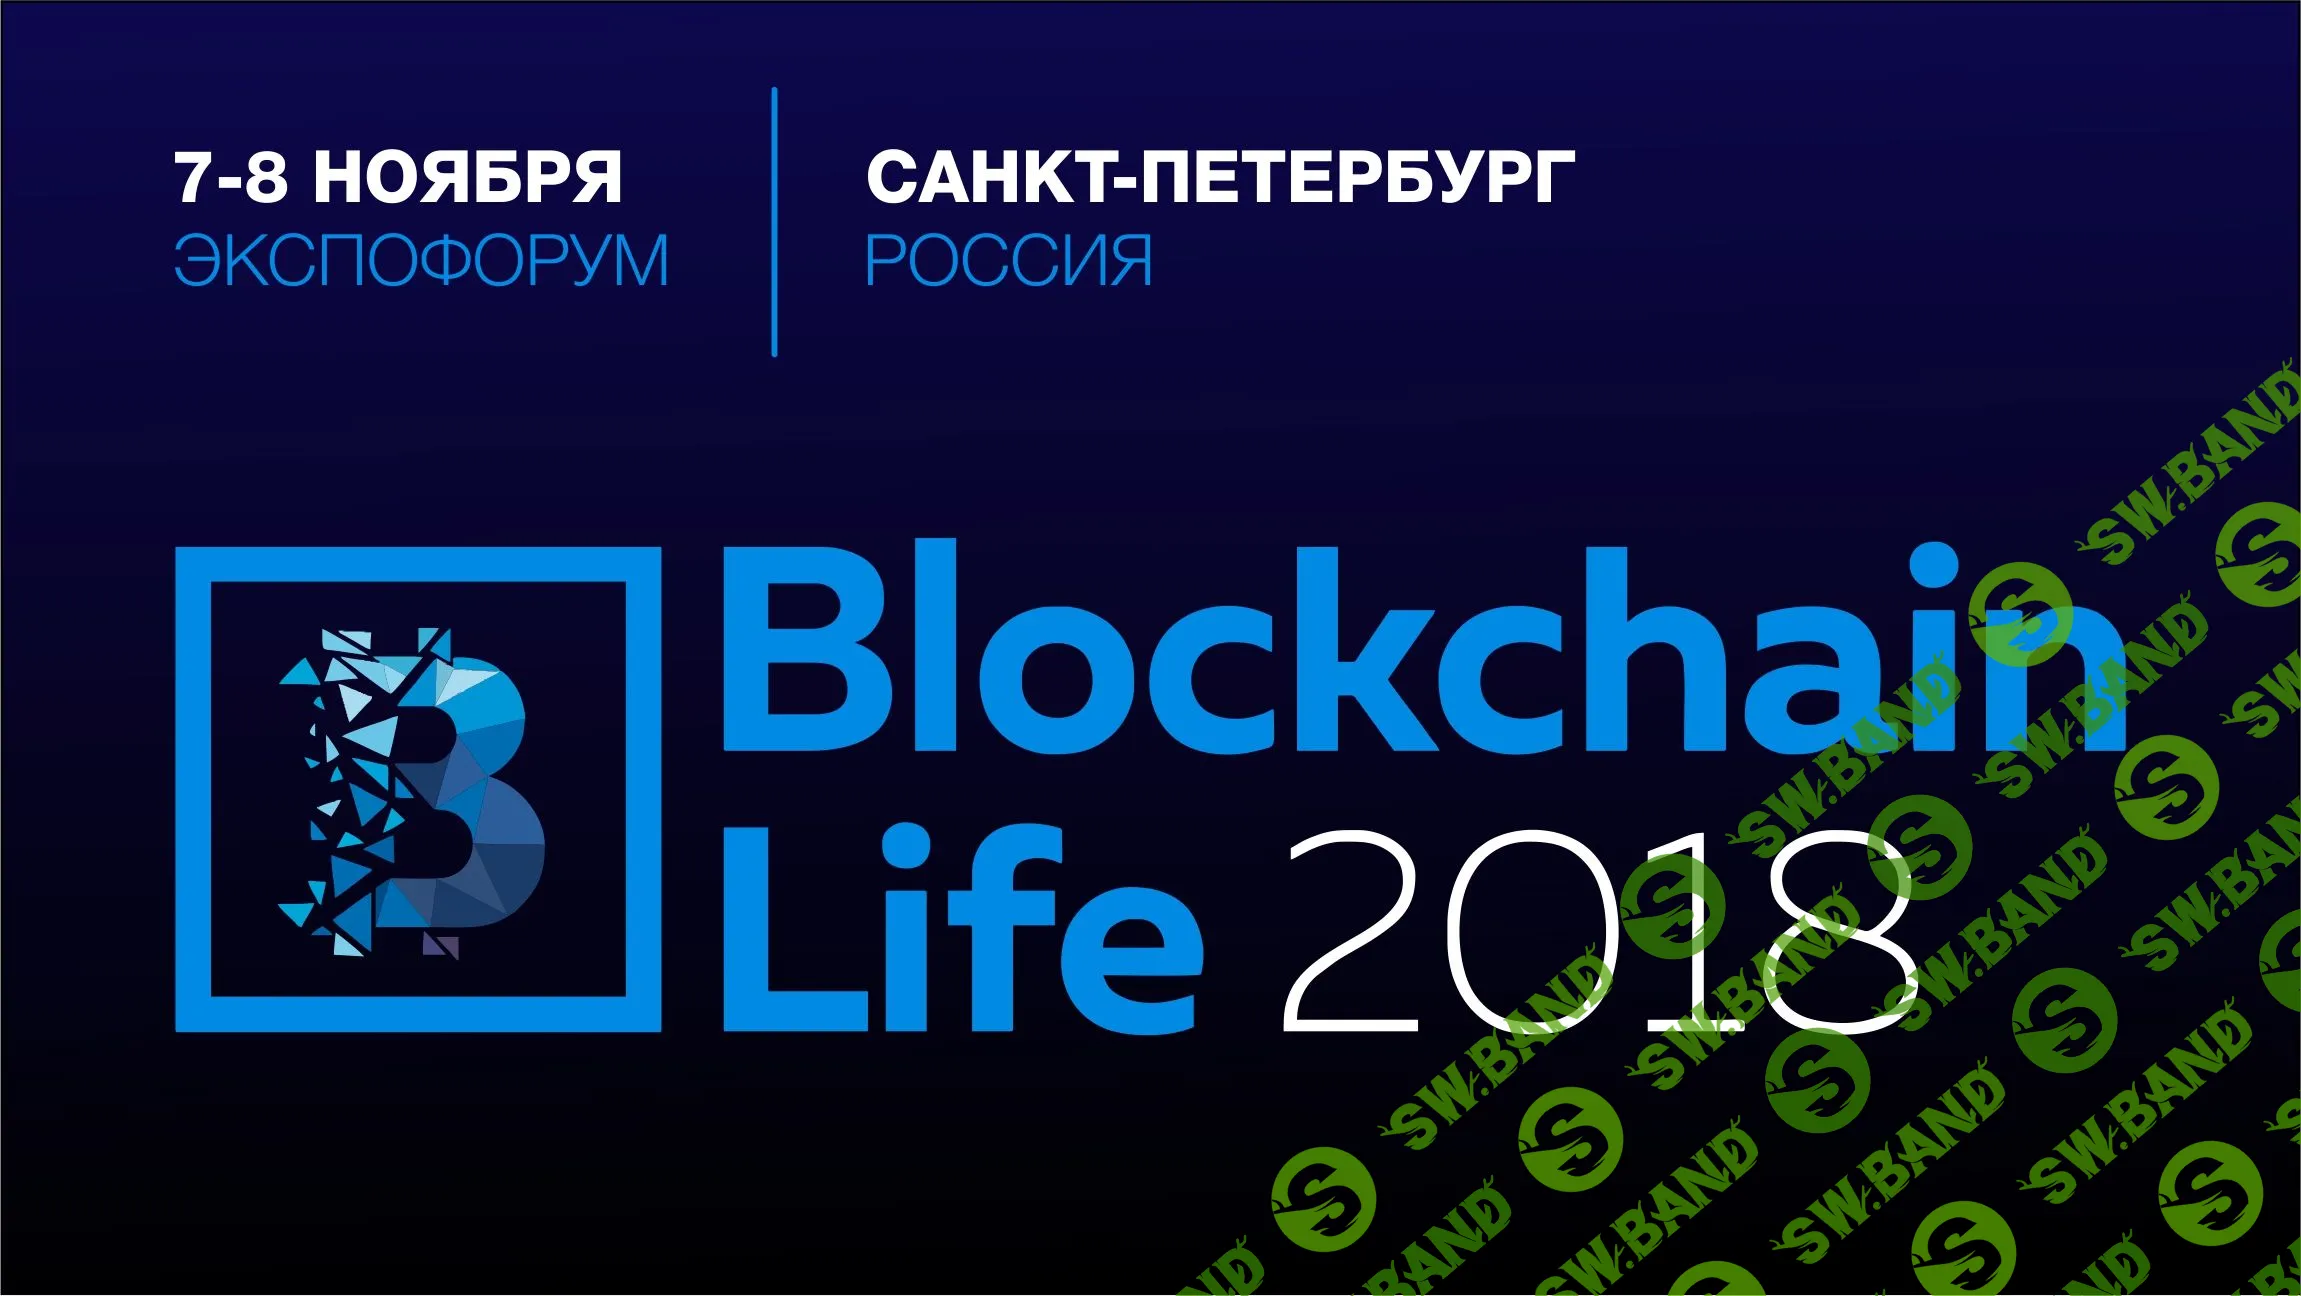 Blockchain Life (2018) - Крупнейший международный форум по блокчейну, криптовалюте, ICO и майнингу в России и Восточной Европе